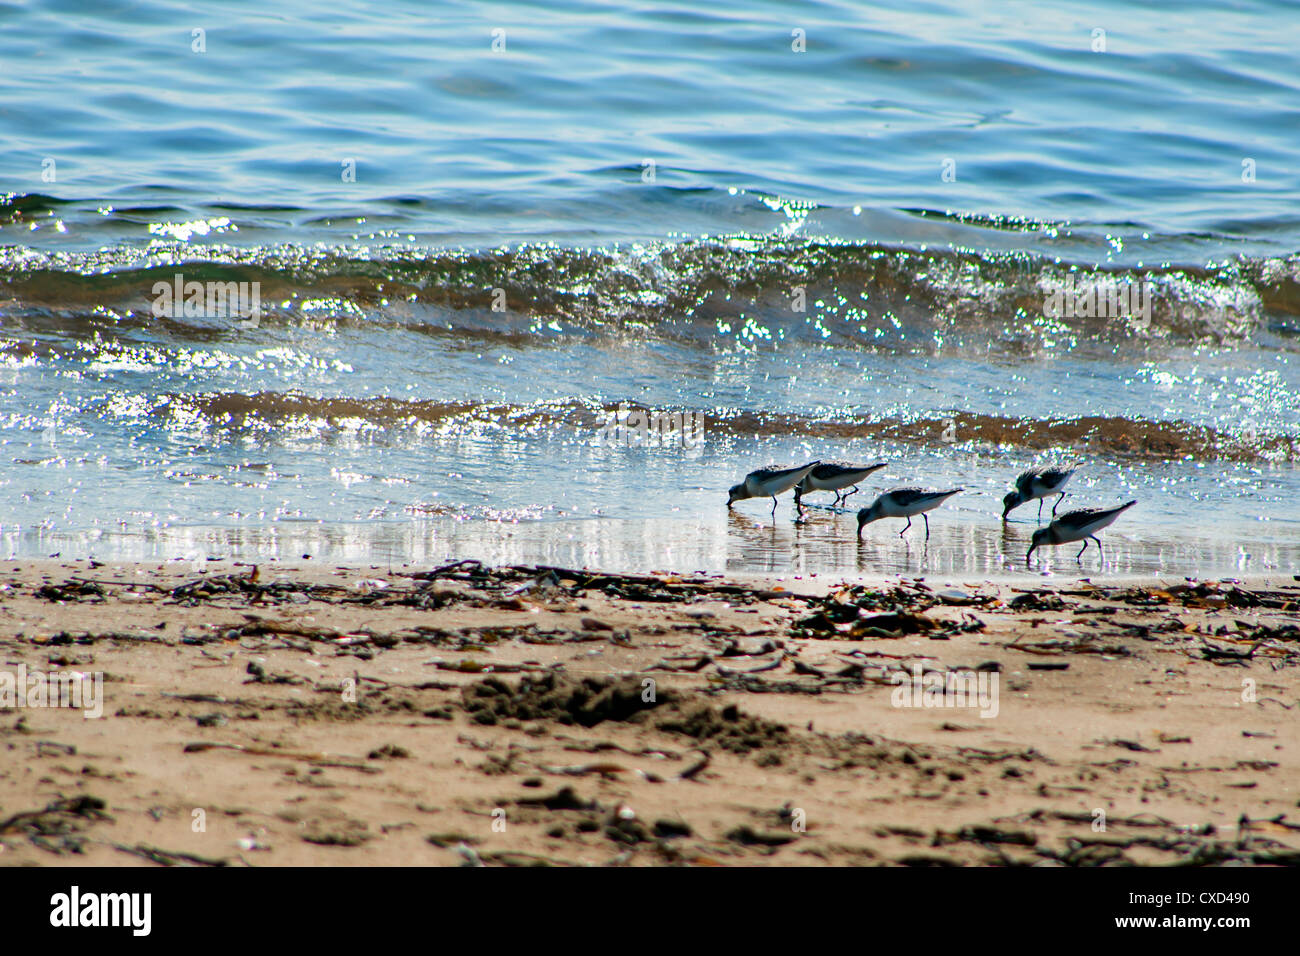 Blick auf Seevögel - Strandläufer - auf der Suche nach Nahrung bei Ebbe in einem japanischen Meer Wladiwostok Russland Stockfoto